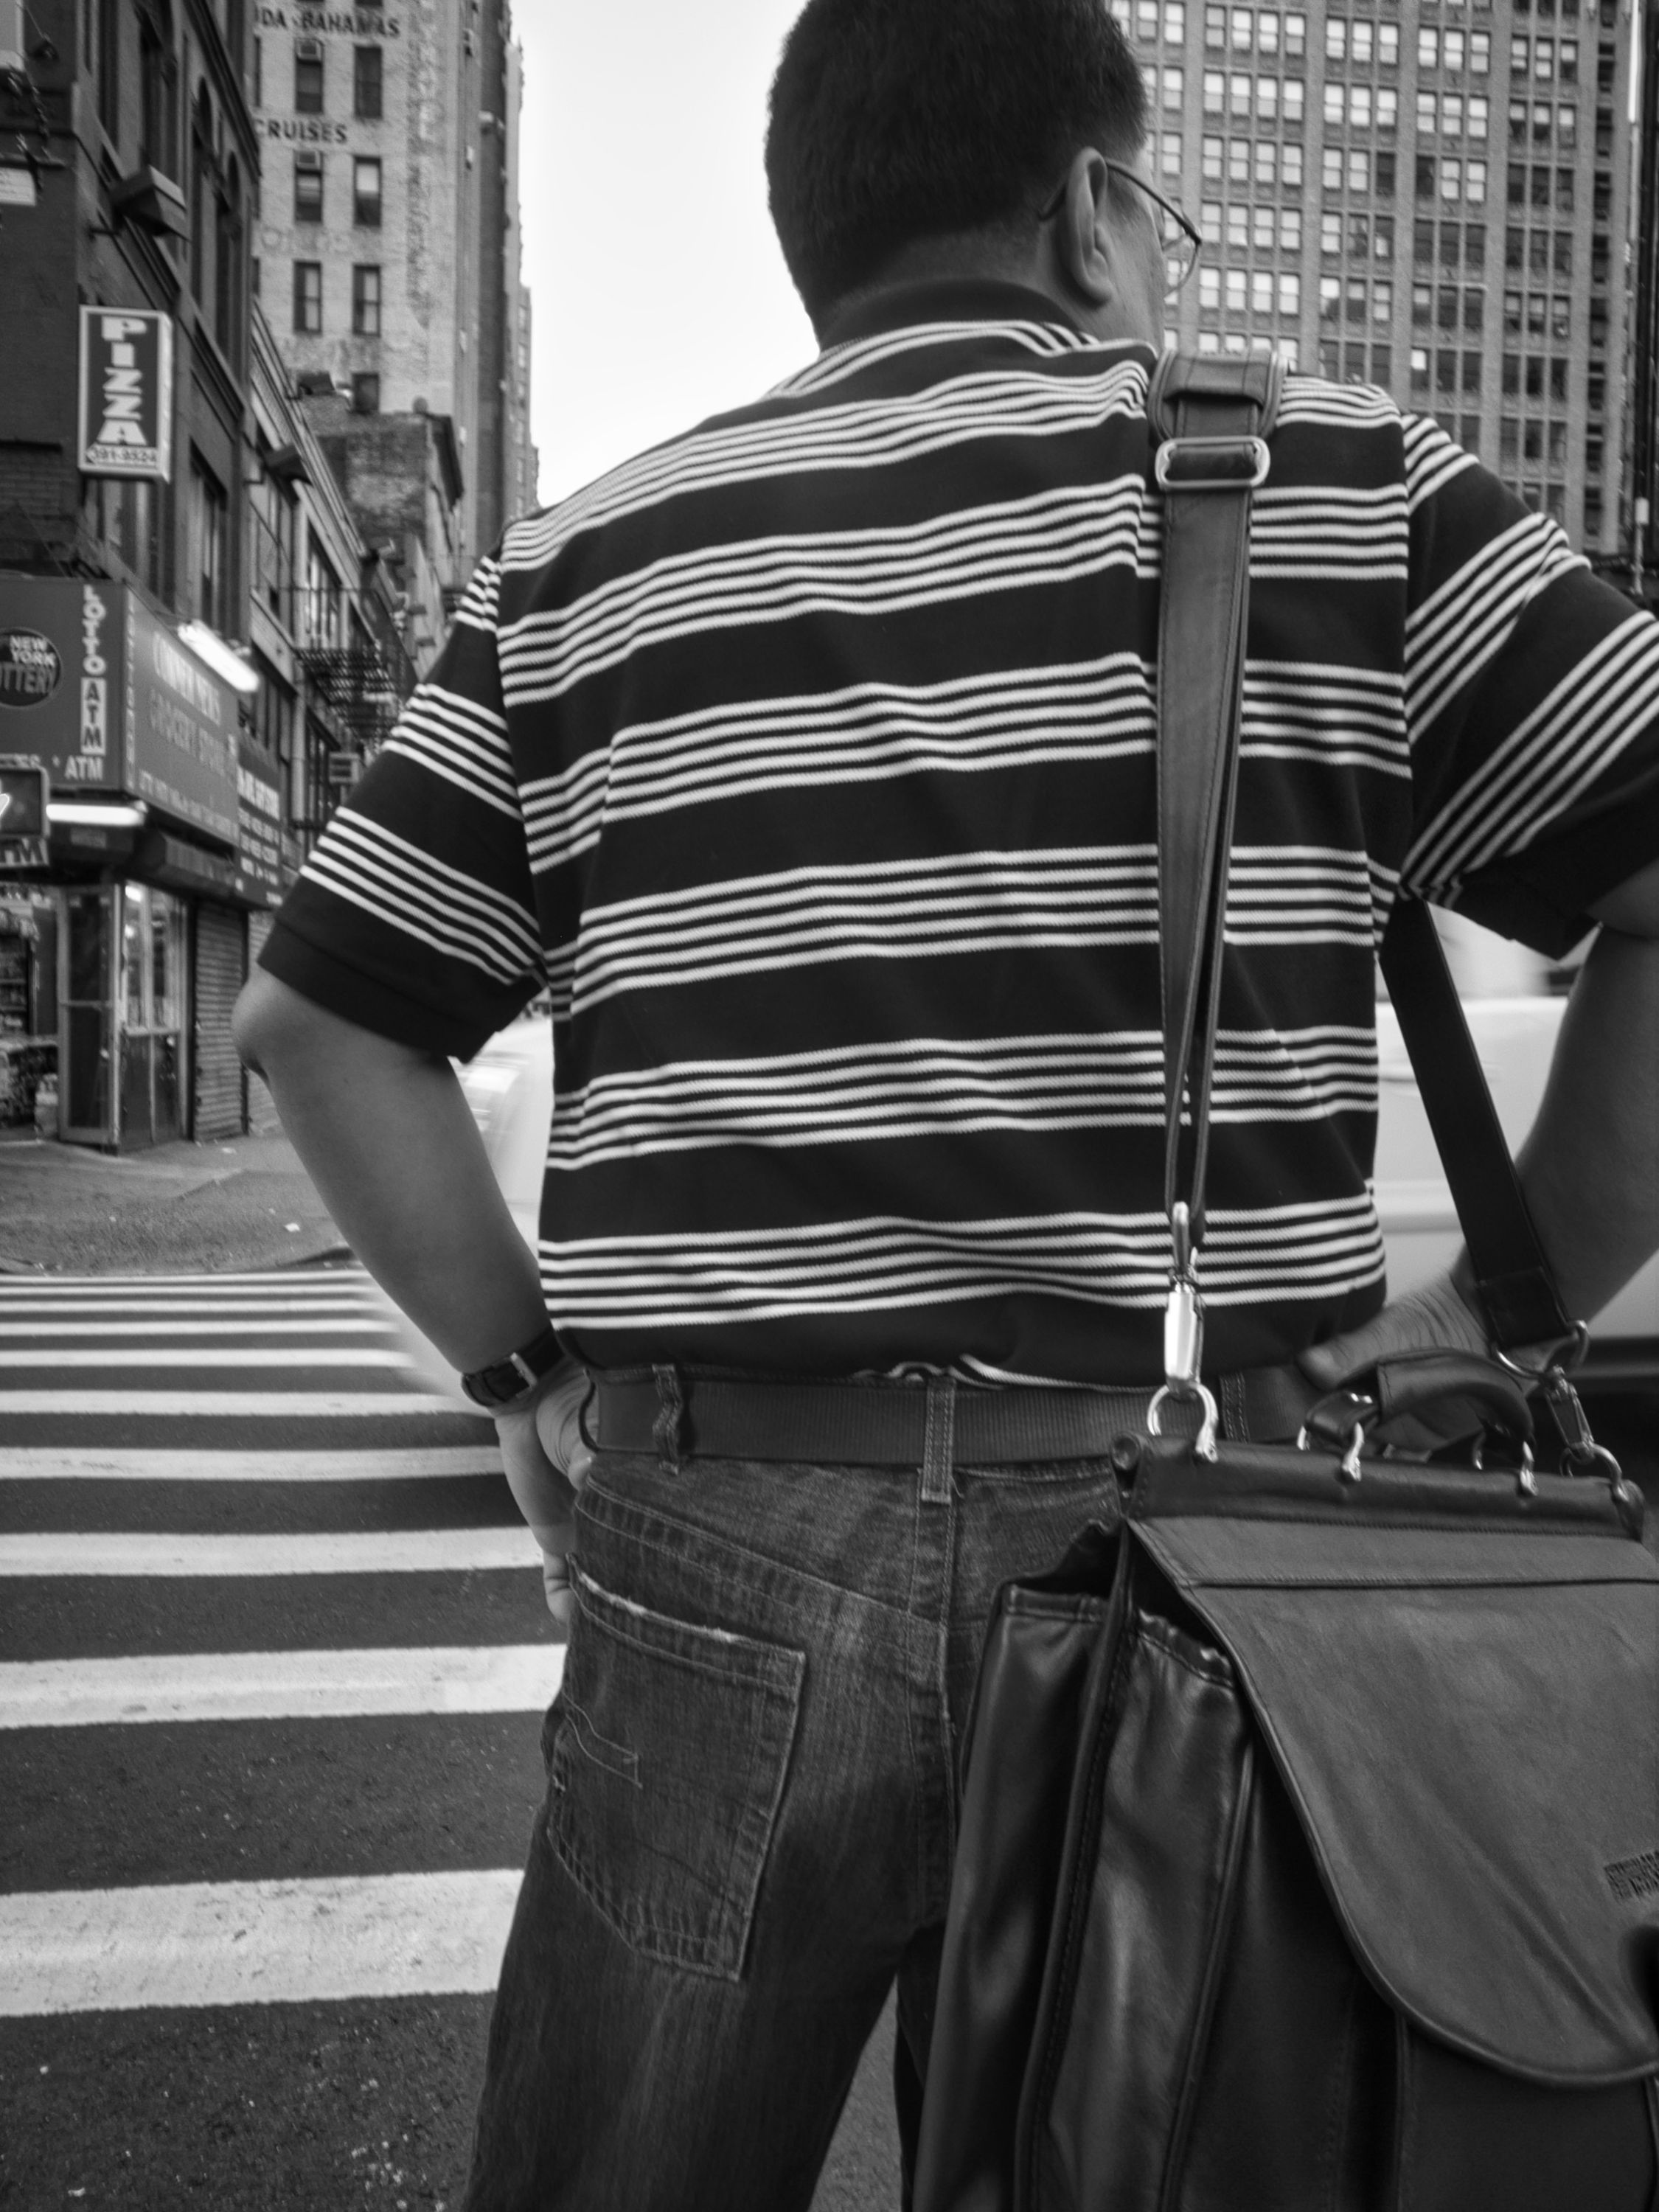 nyc-crosswalk-shirt